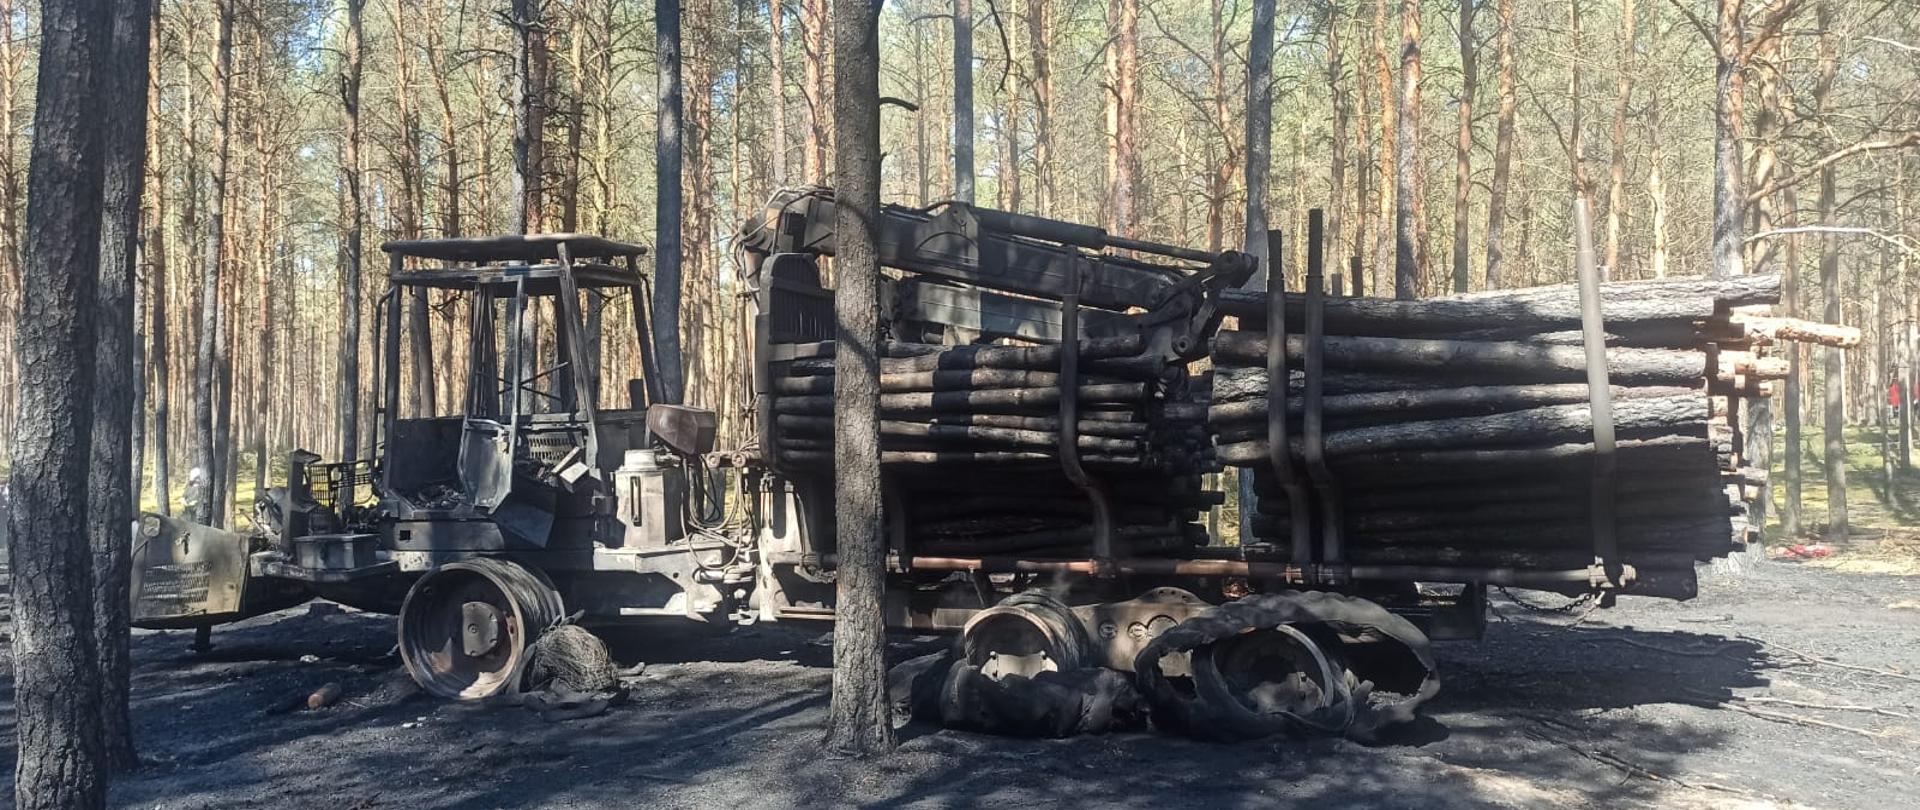 Widać spaloną maszynę do wycinki drzewa i poszycie leśne oraz przyczepę z drzewem